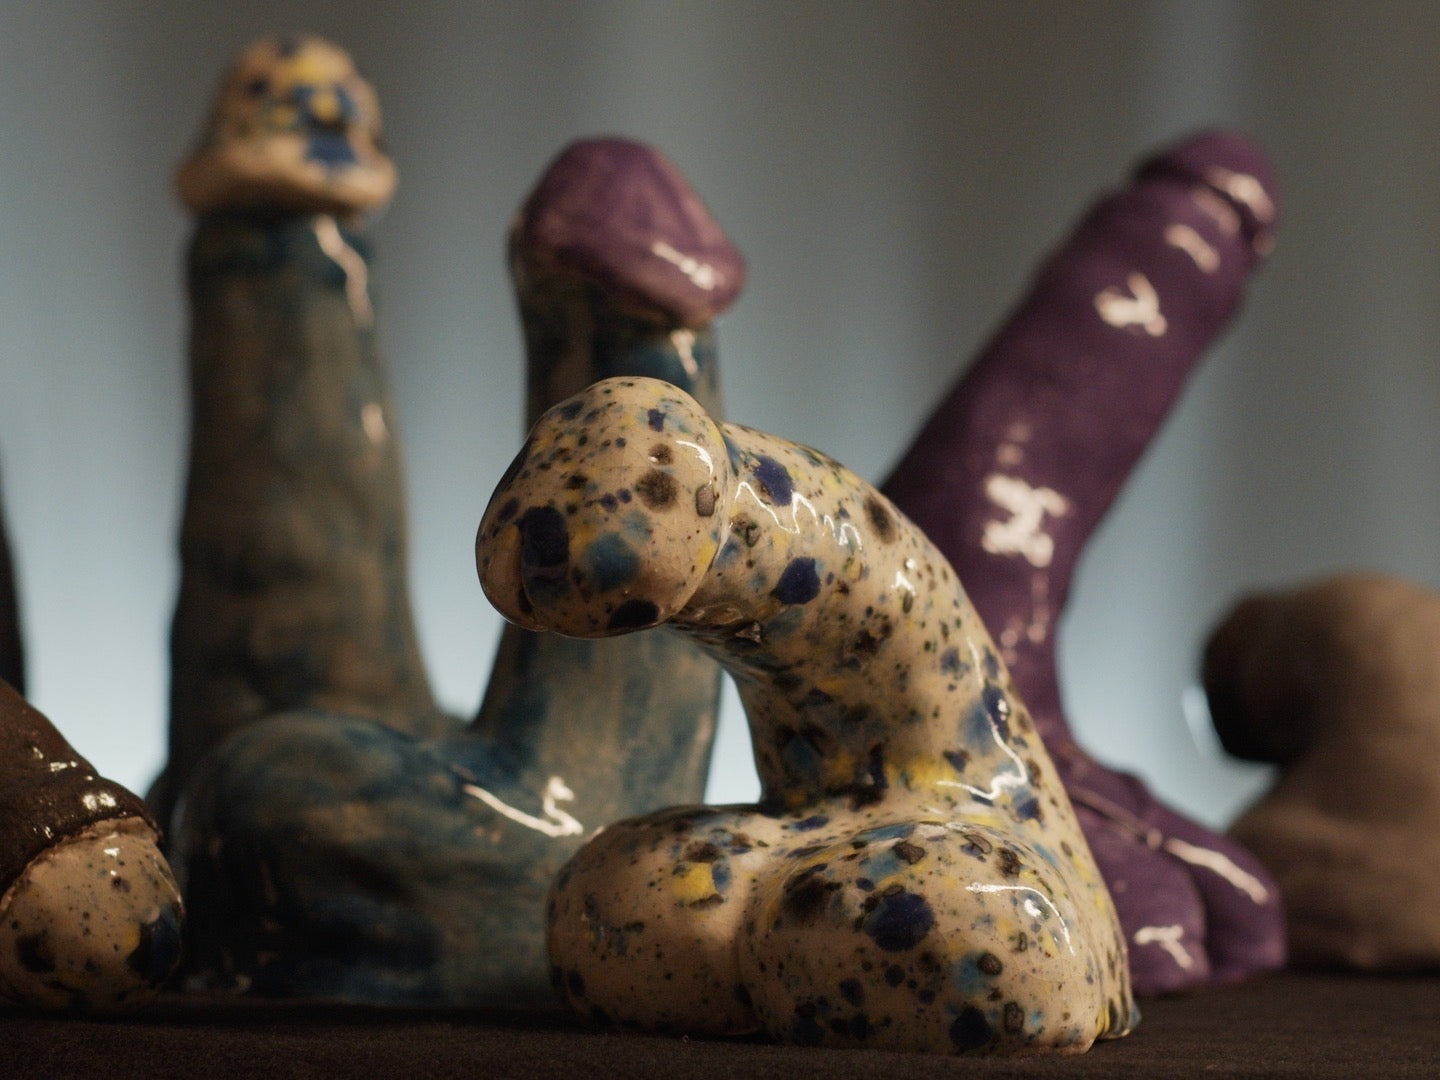 Ceramic Dick Sculpture Workshop - in Berlin, Deutschland